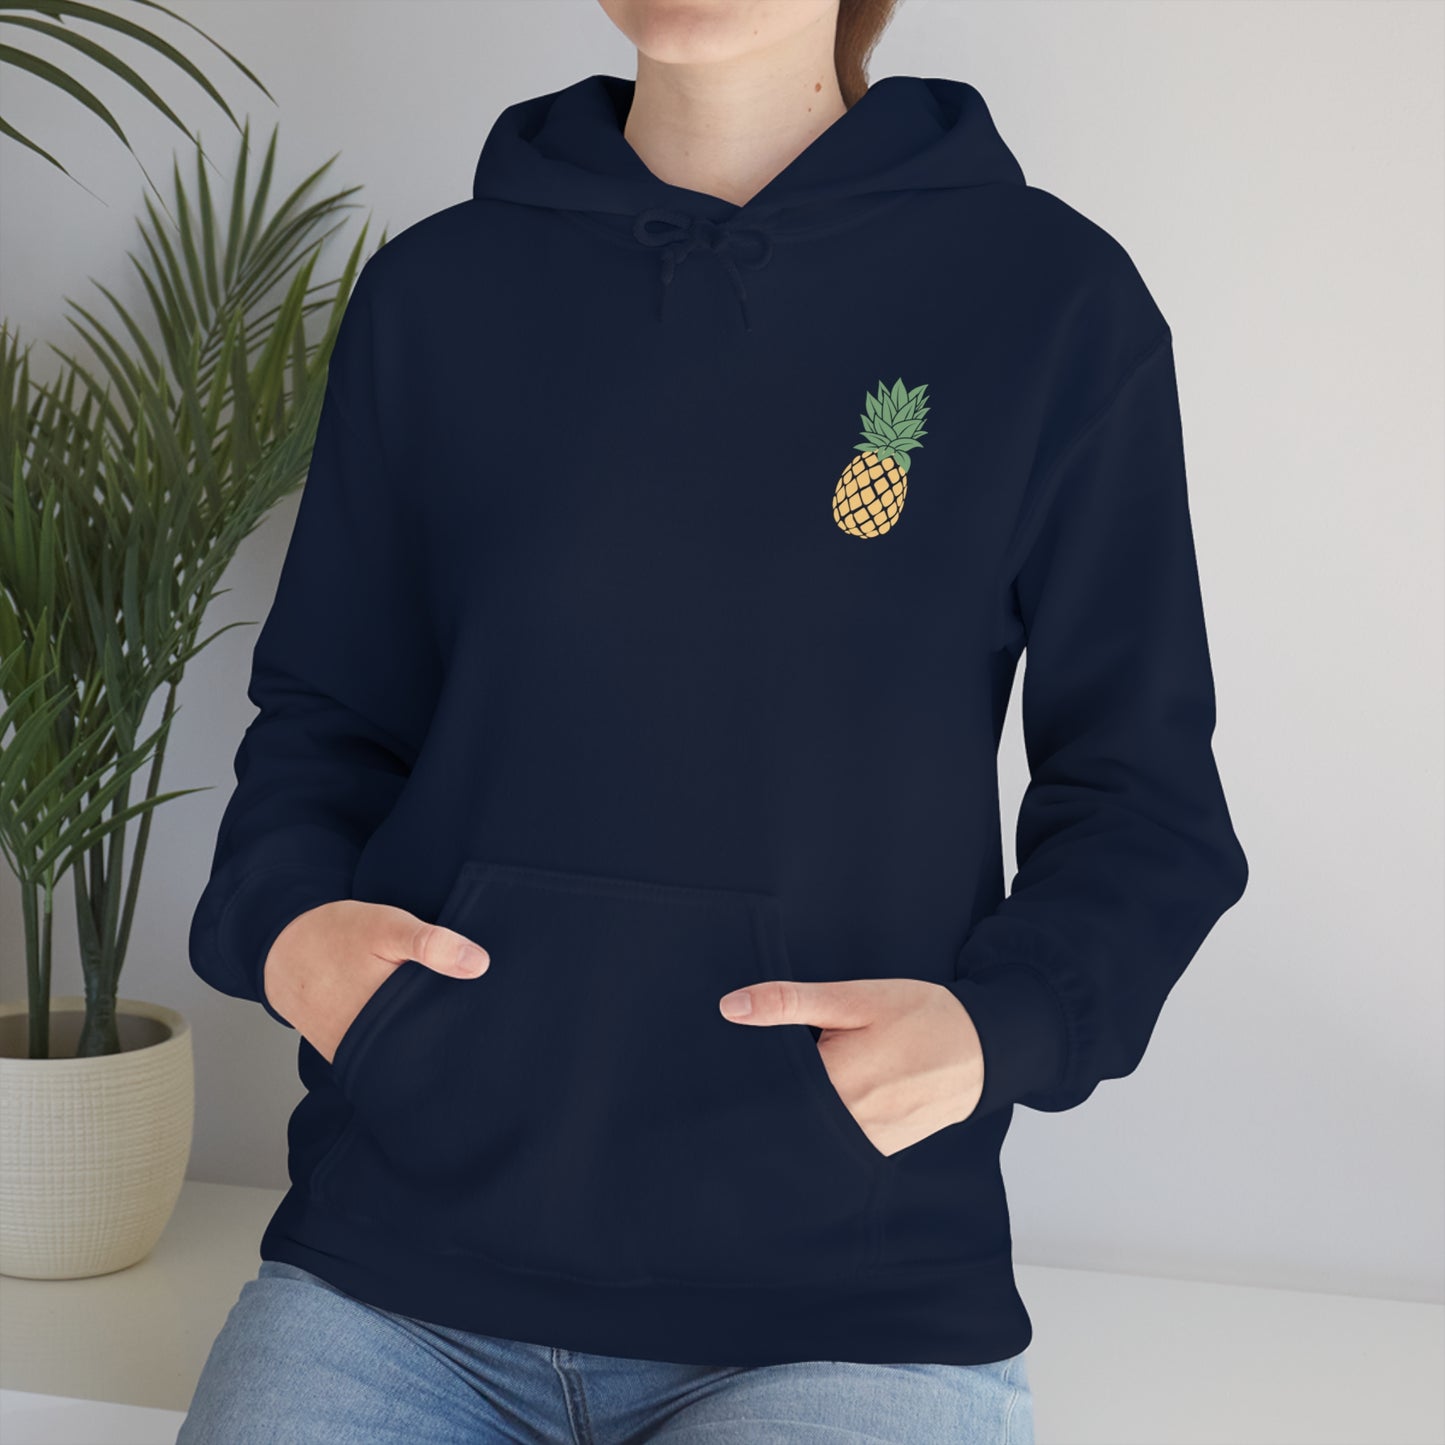 Unisex Heavy Blend Hooded Sweatshirt, Be Like A Pineapple Hoodie